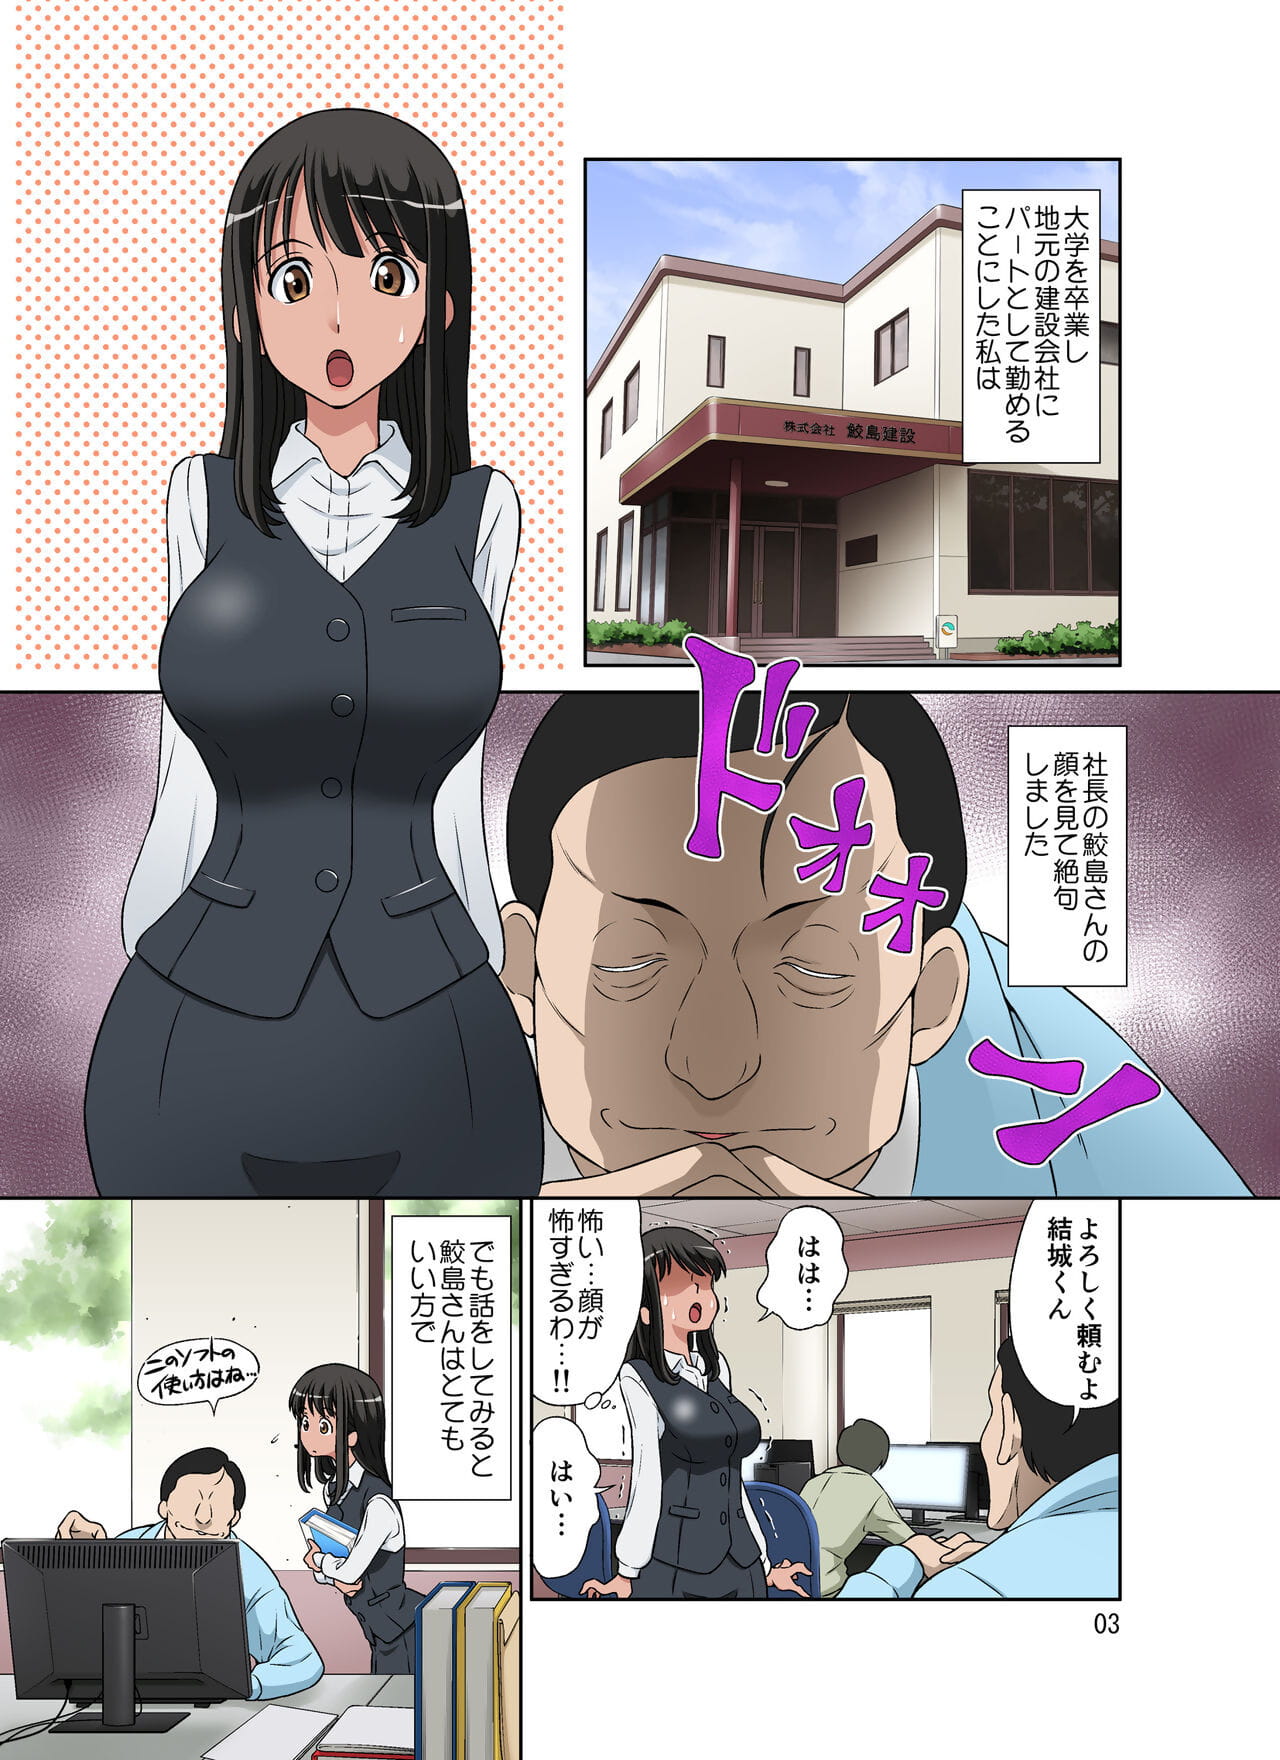 Samejima Shachou wa Keisanpu ga Osuki - part 2 page 1